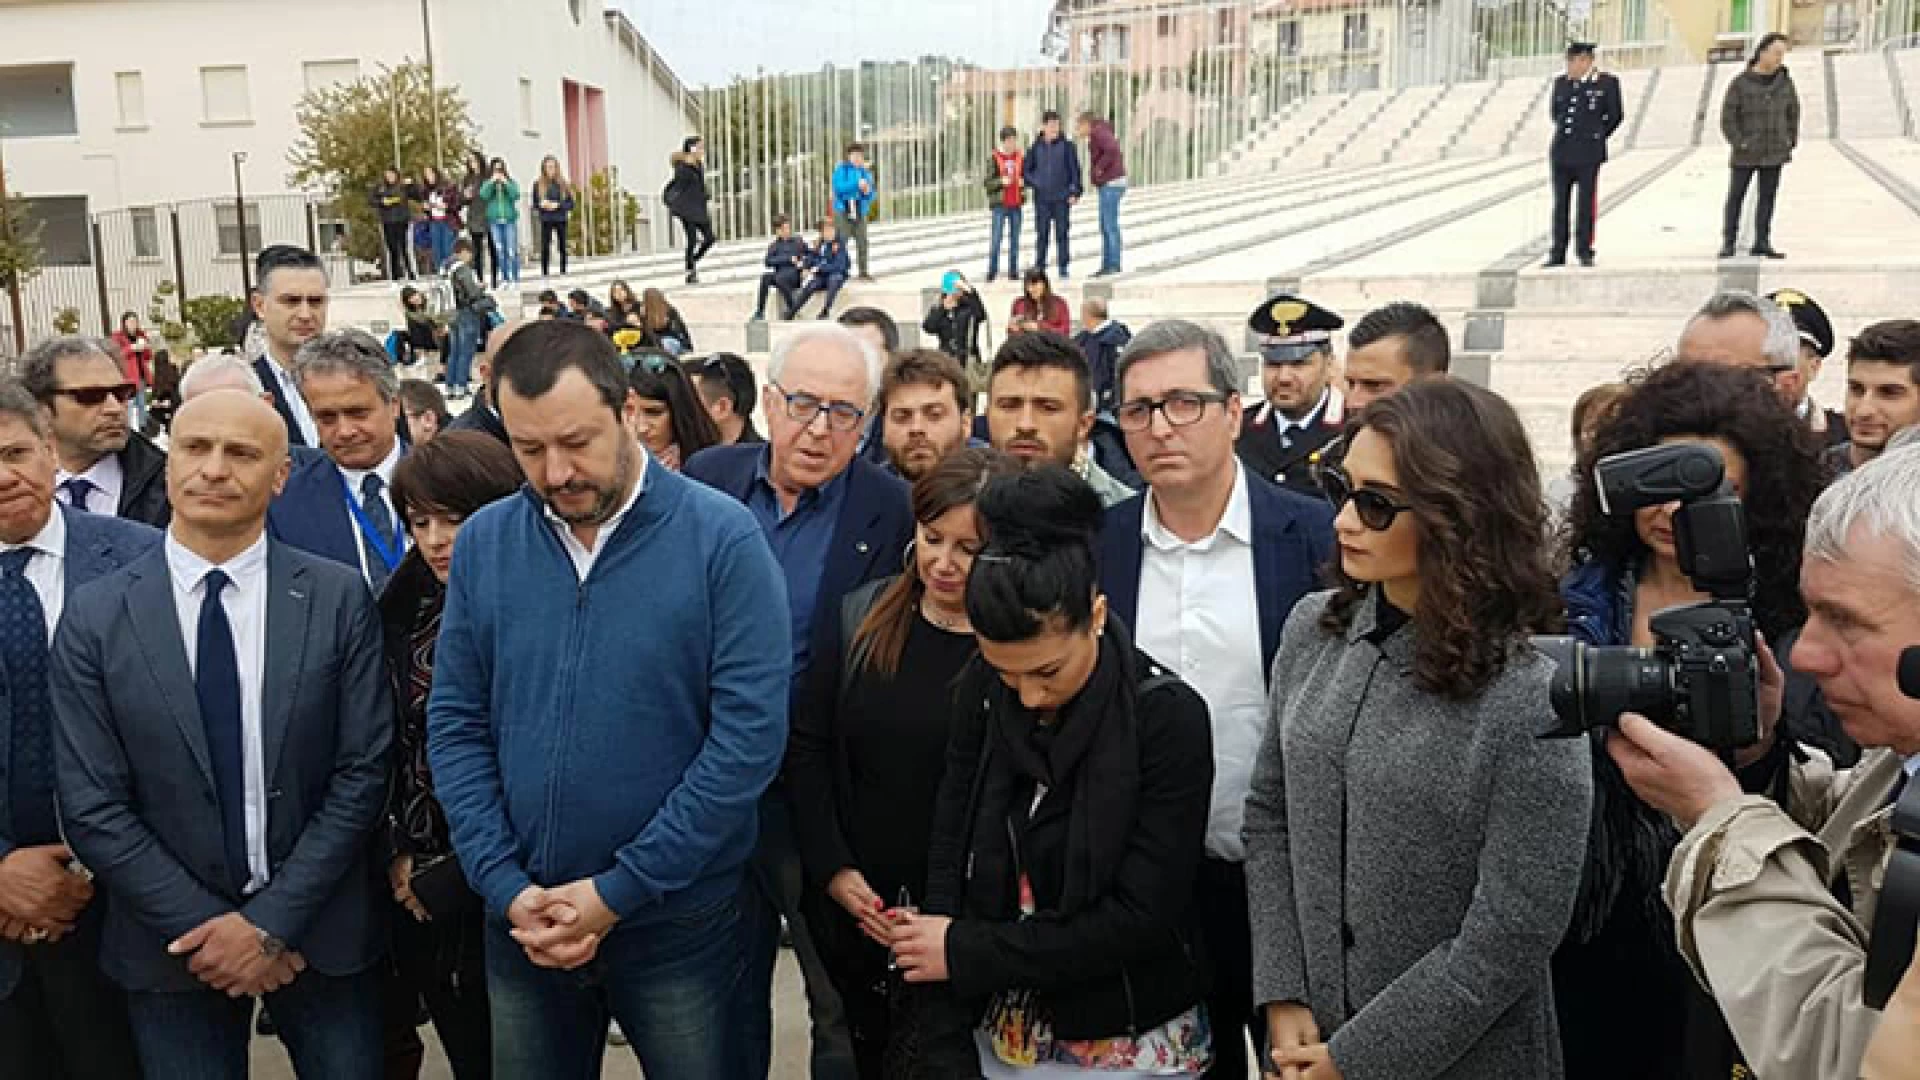 Salvini in Molise: “Con la Lega al Governo niente immigrati a San Giuliano di Puglia”.